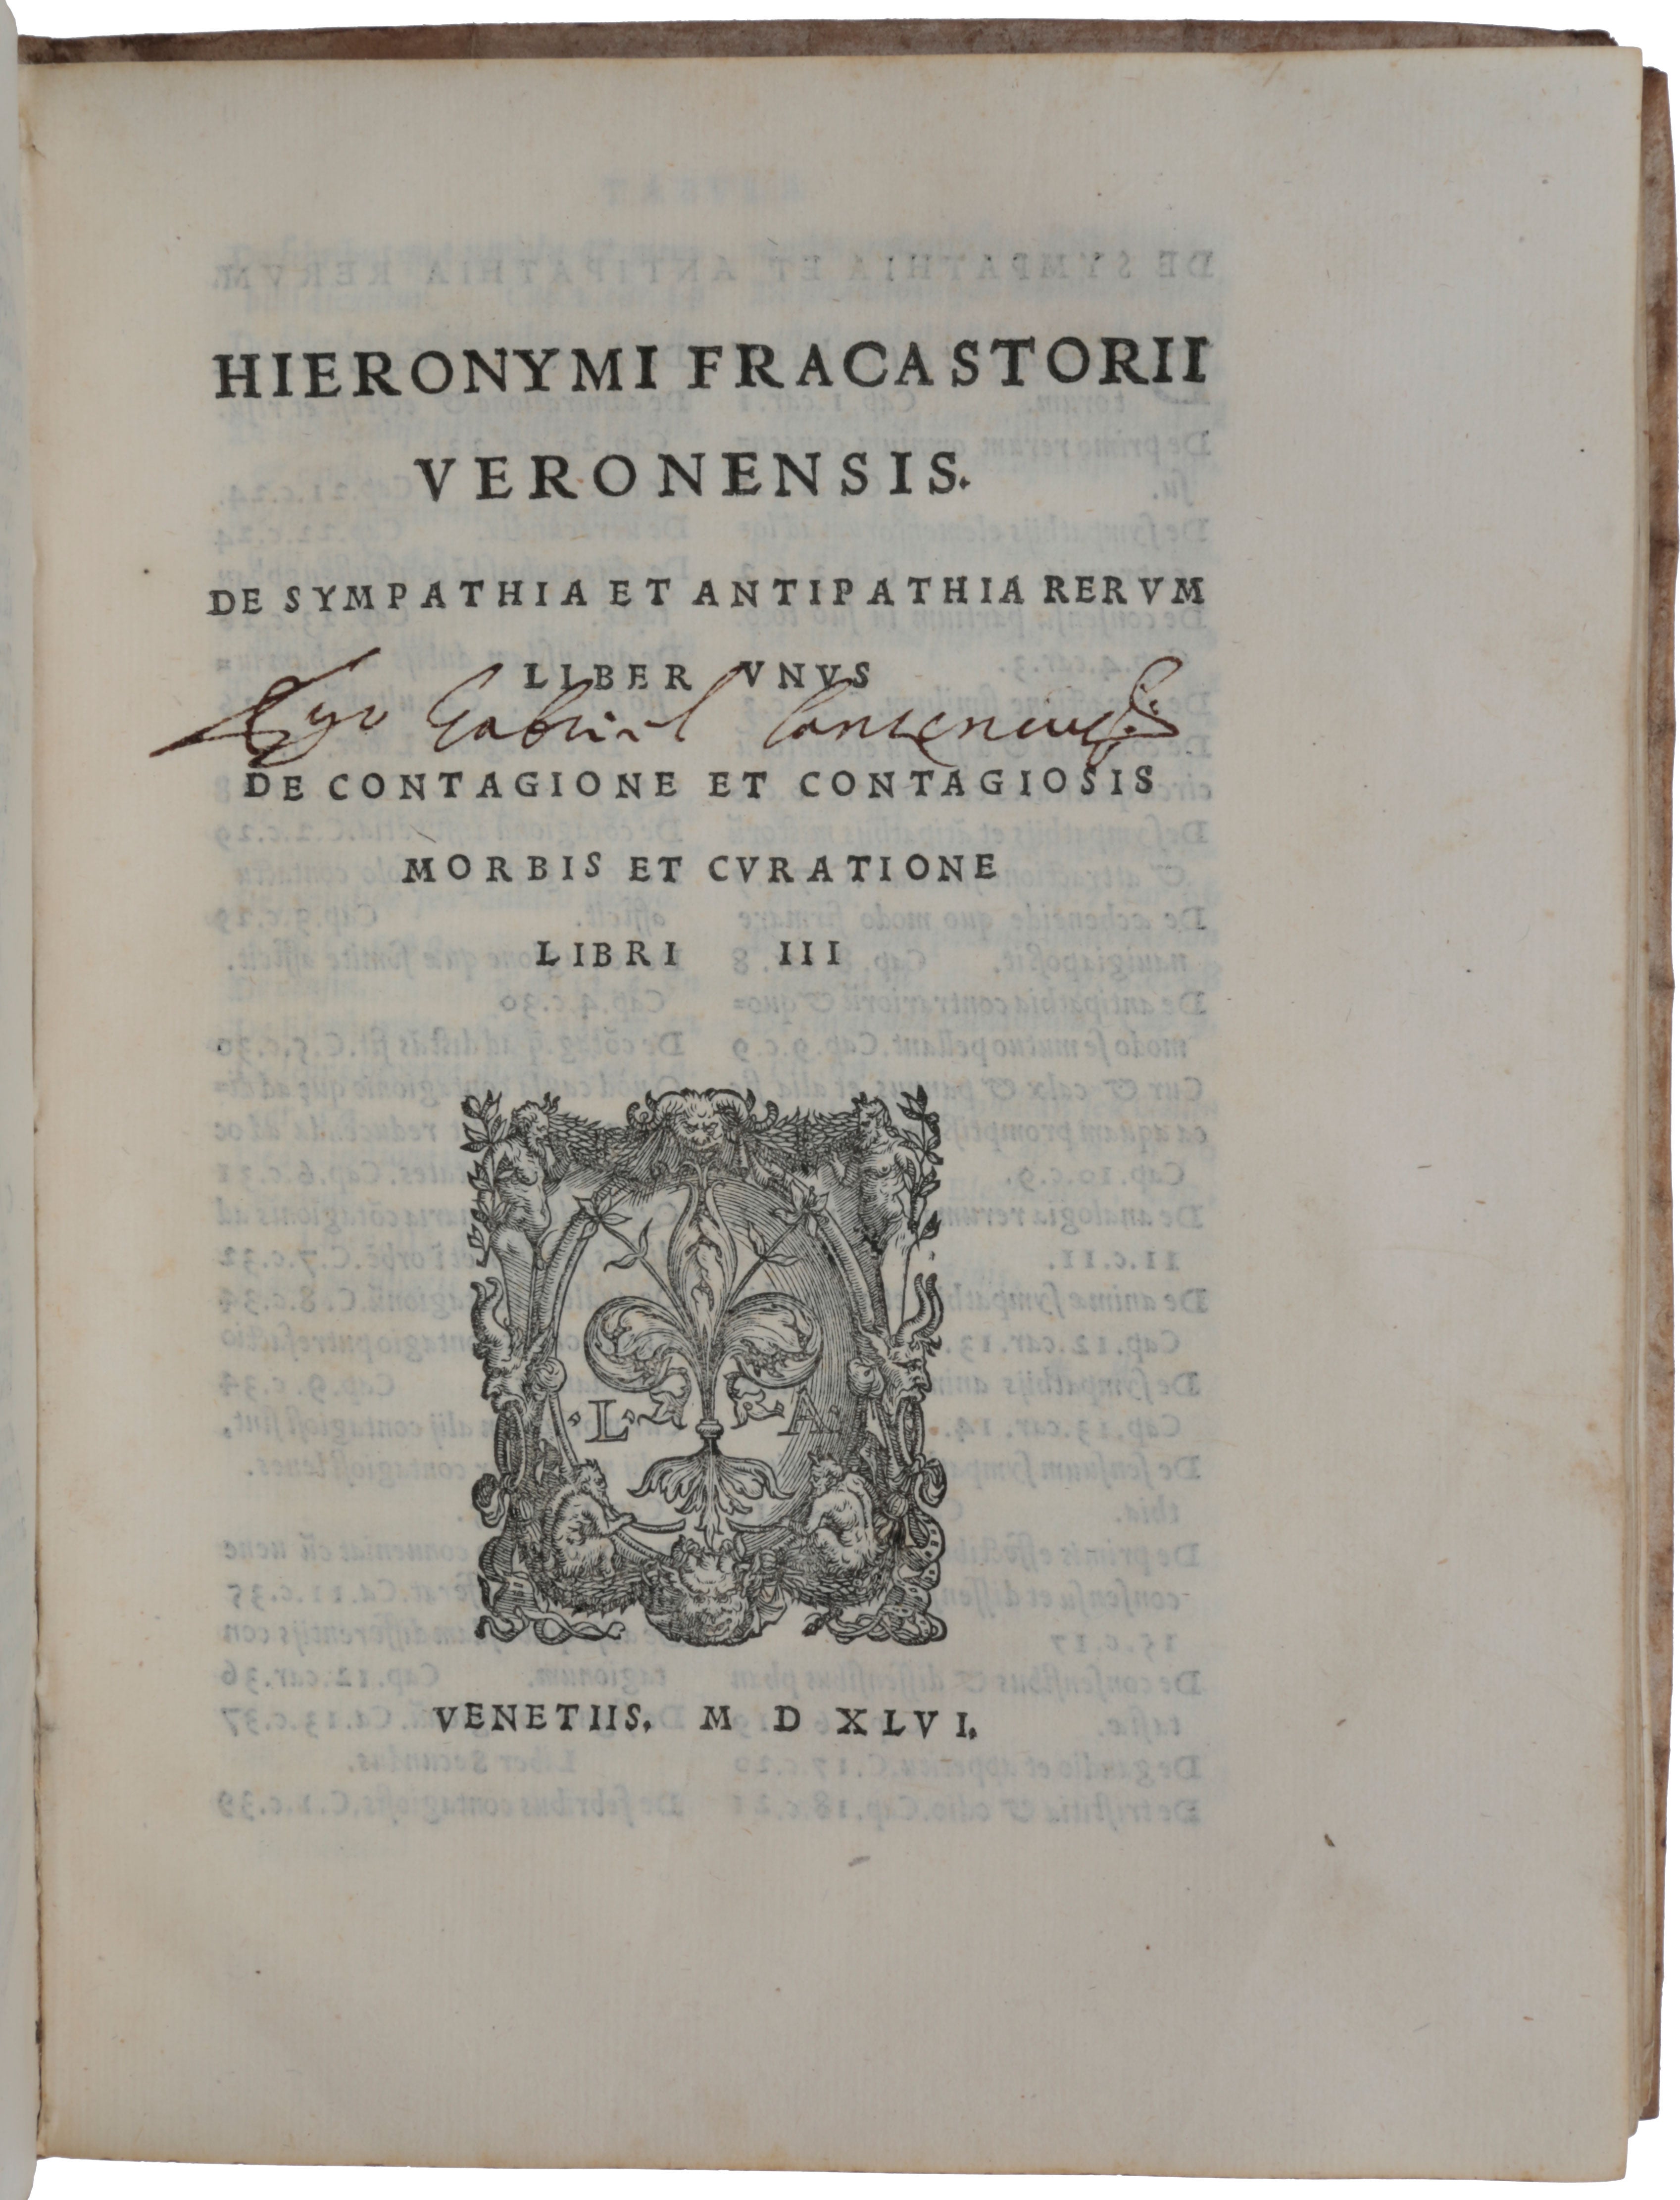 Item #5228 De sympathia et antipathia rerum liber unus. De contagione et contagiosis morbis et curatione libri III. Girolamo FRACASTORO.